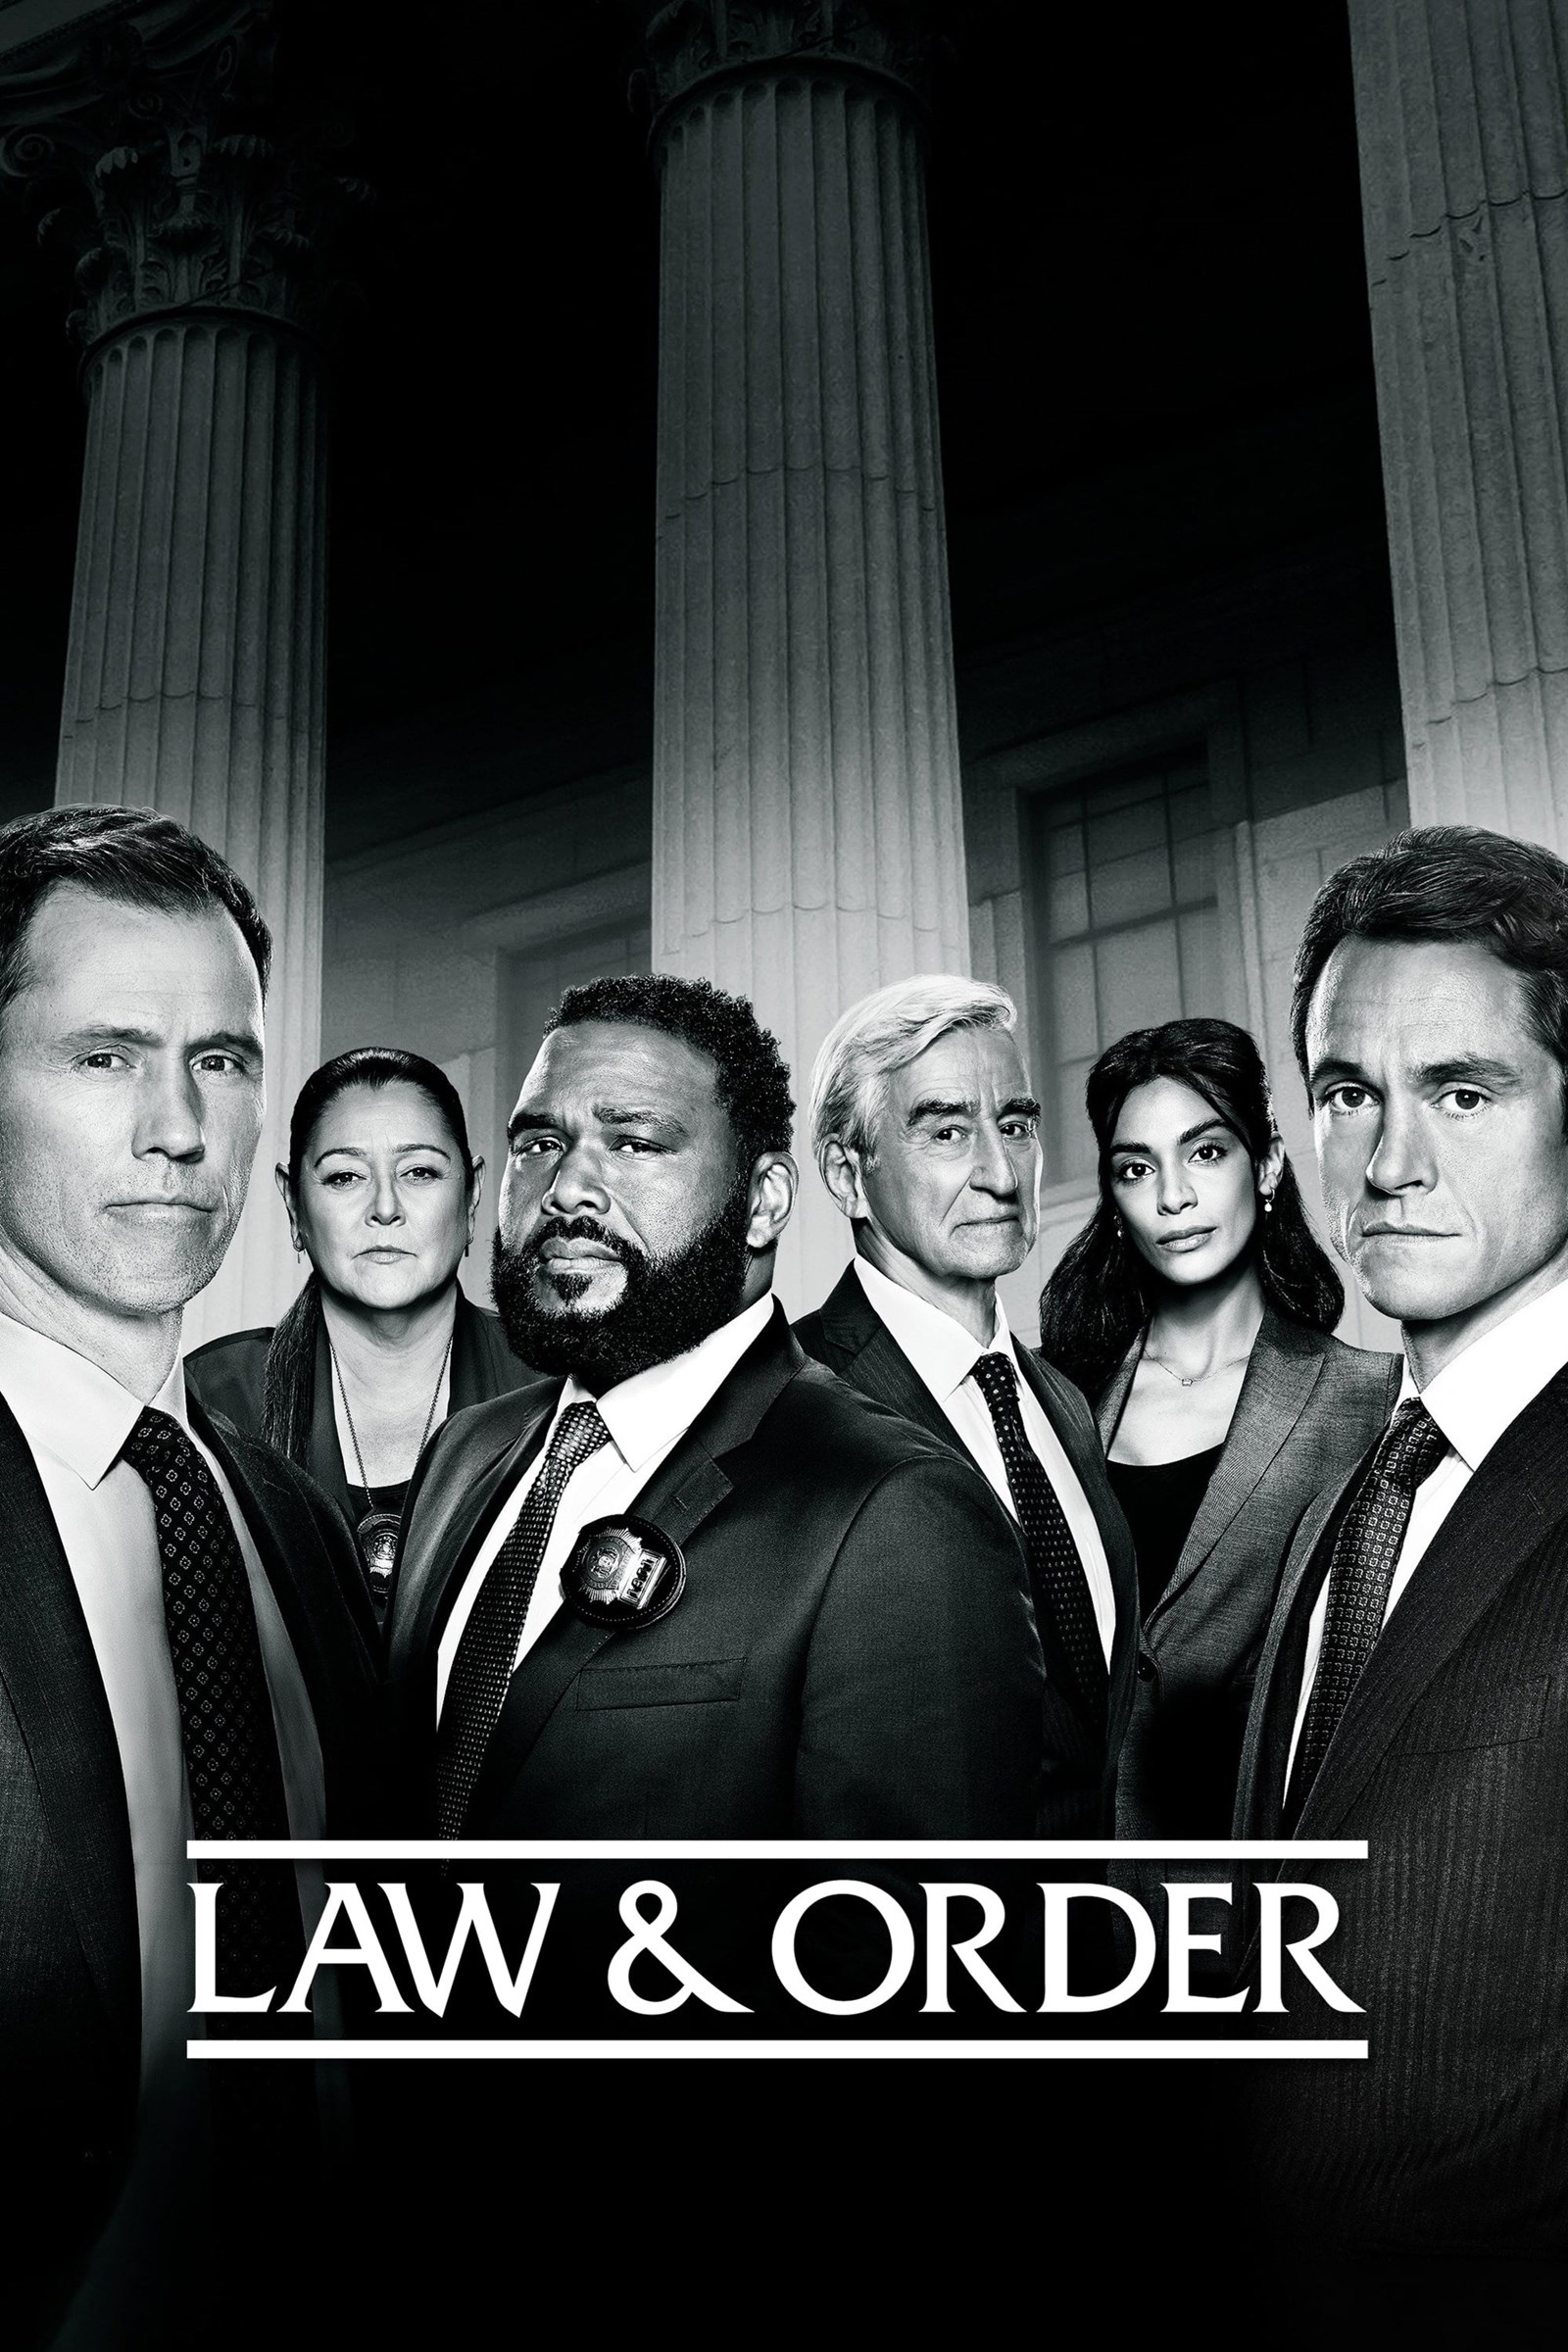 مشاهدة مسلسل Law & Order الموسم 21 الحادي والعشرون الحلقة 4 الرابعة مترجمة